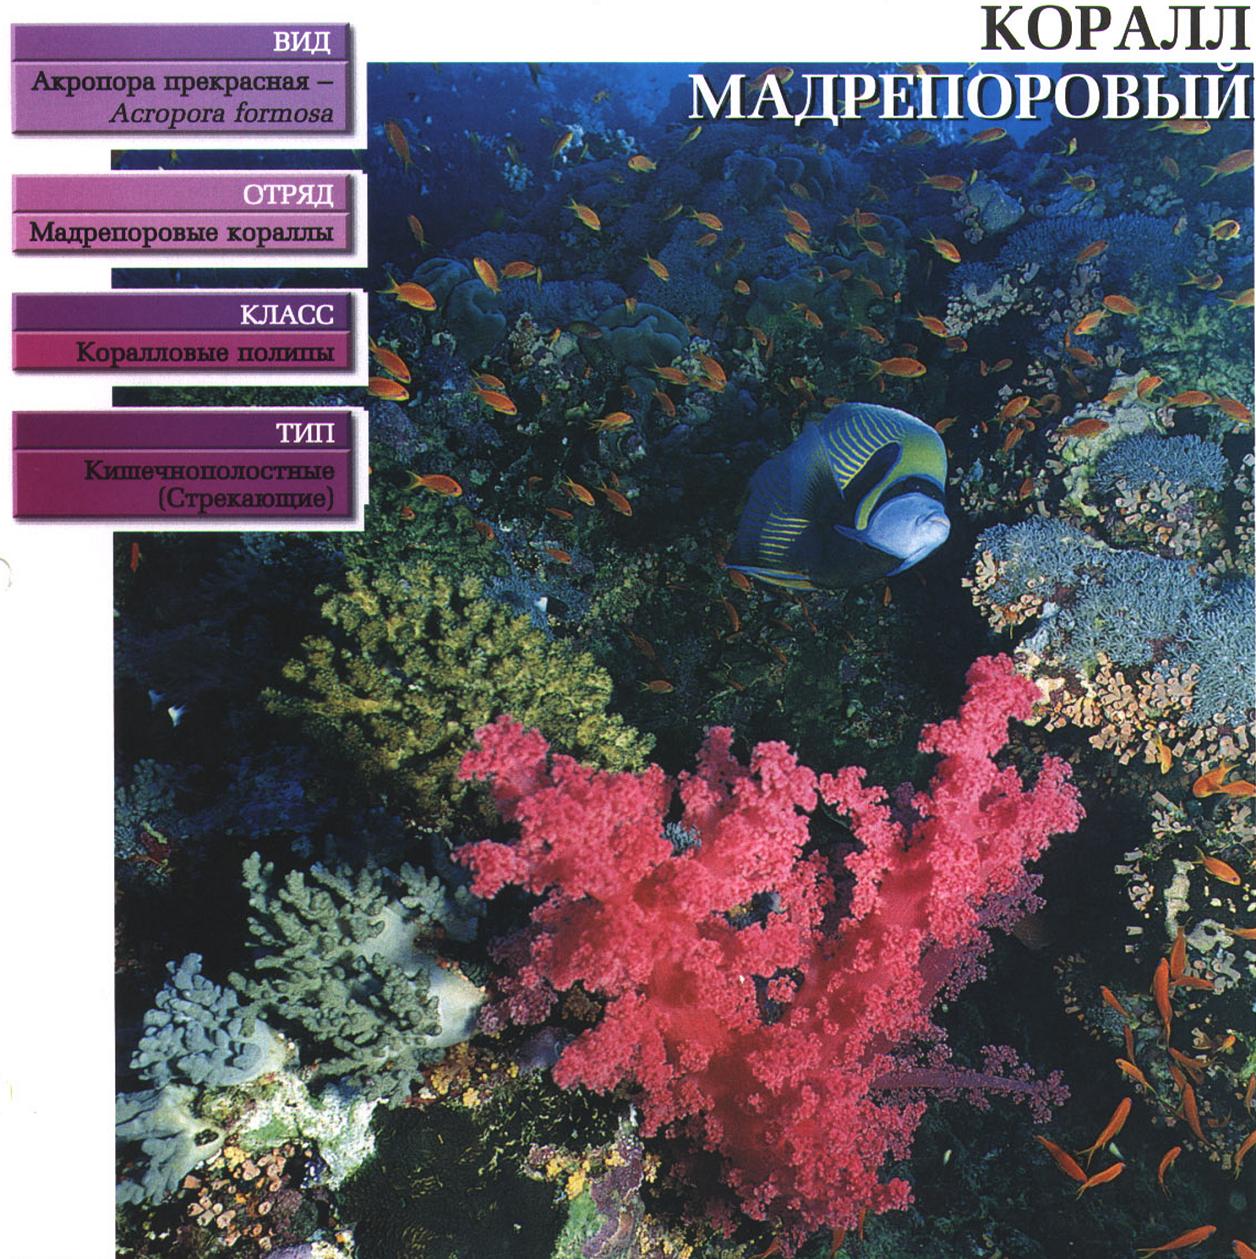 Систематика (научная классификация) коралла мадрепорового. Acropora formosa.